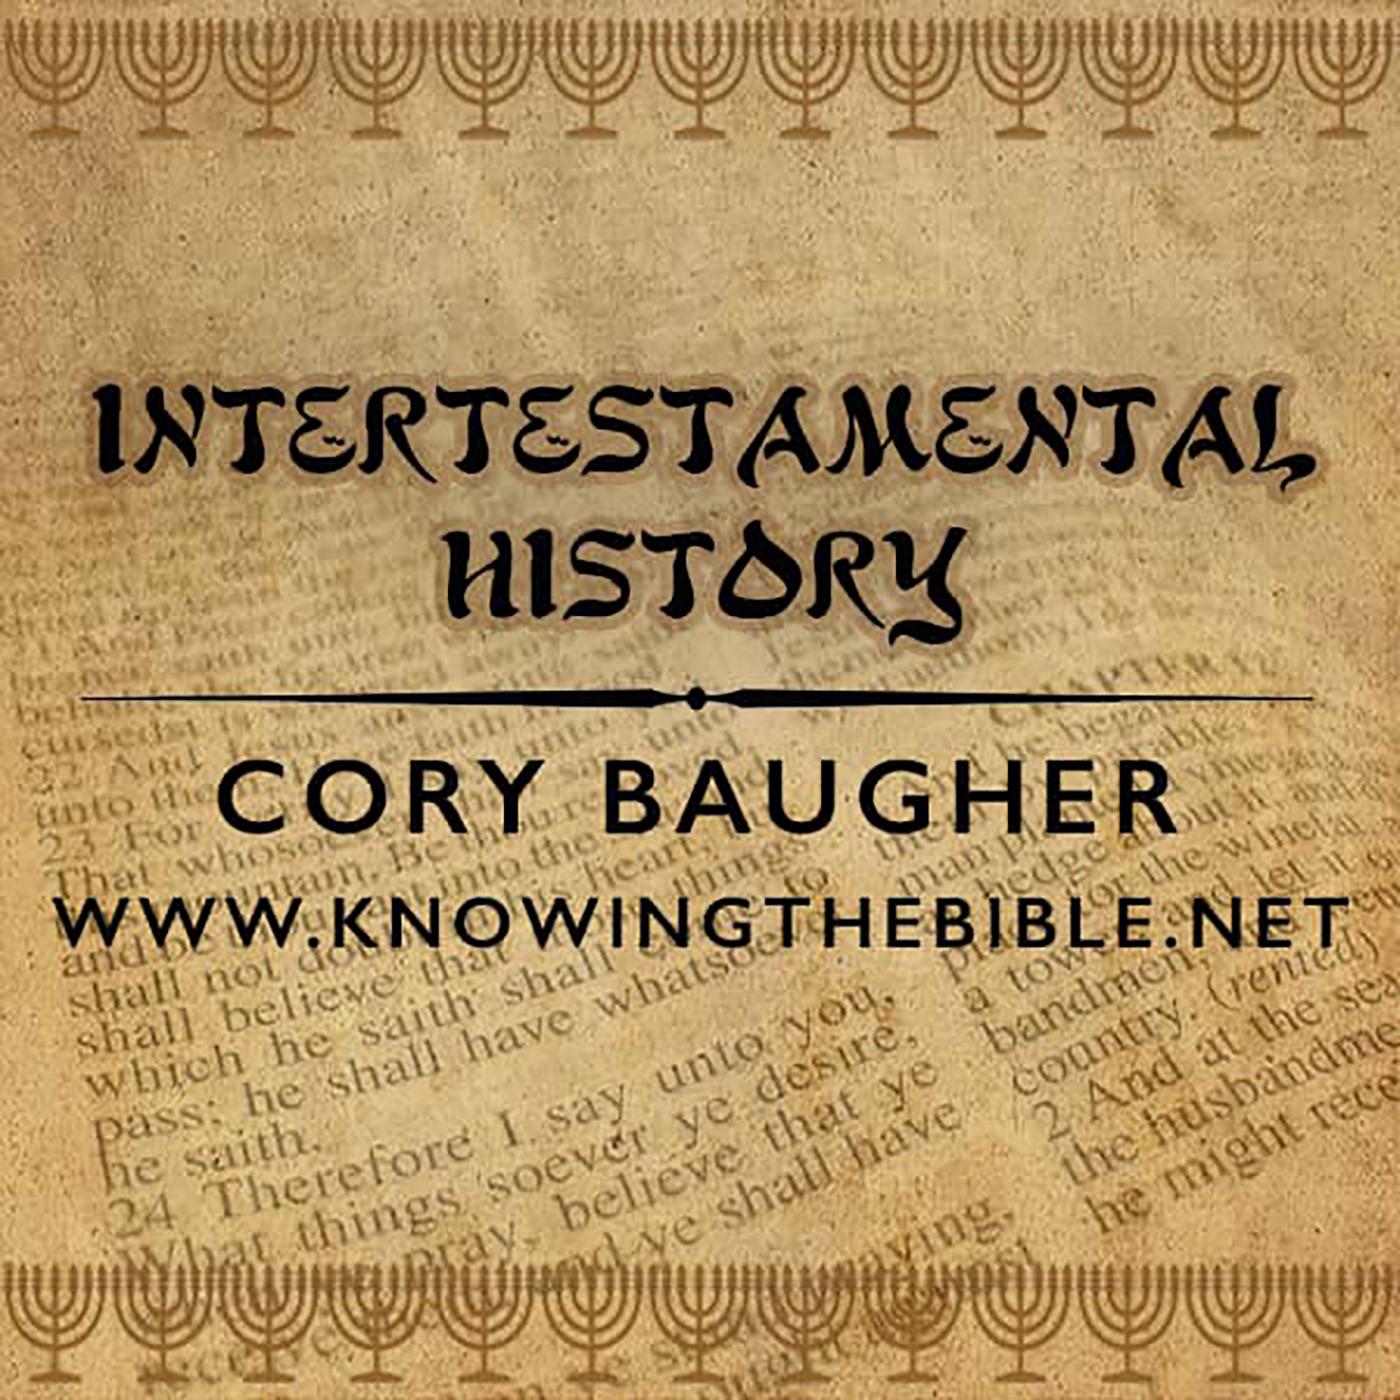 Intertestamental History